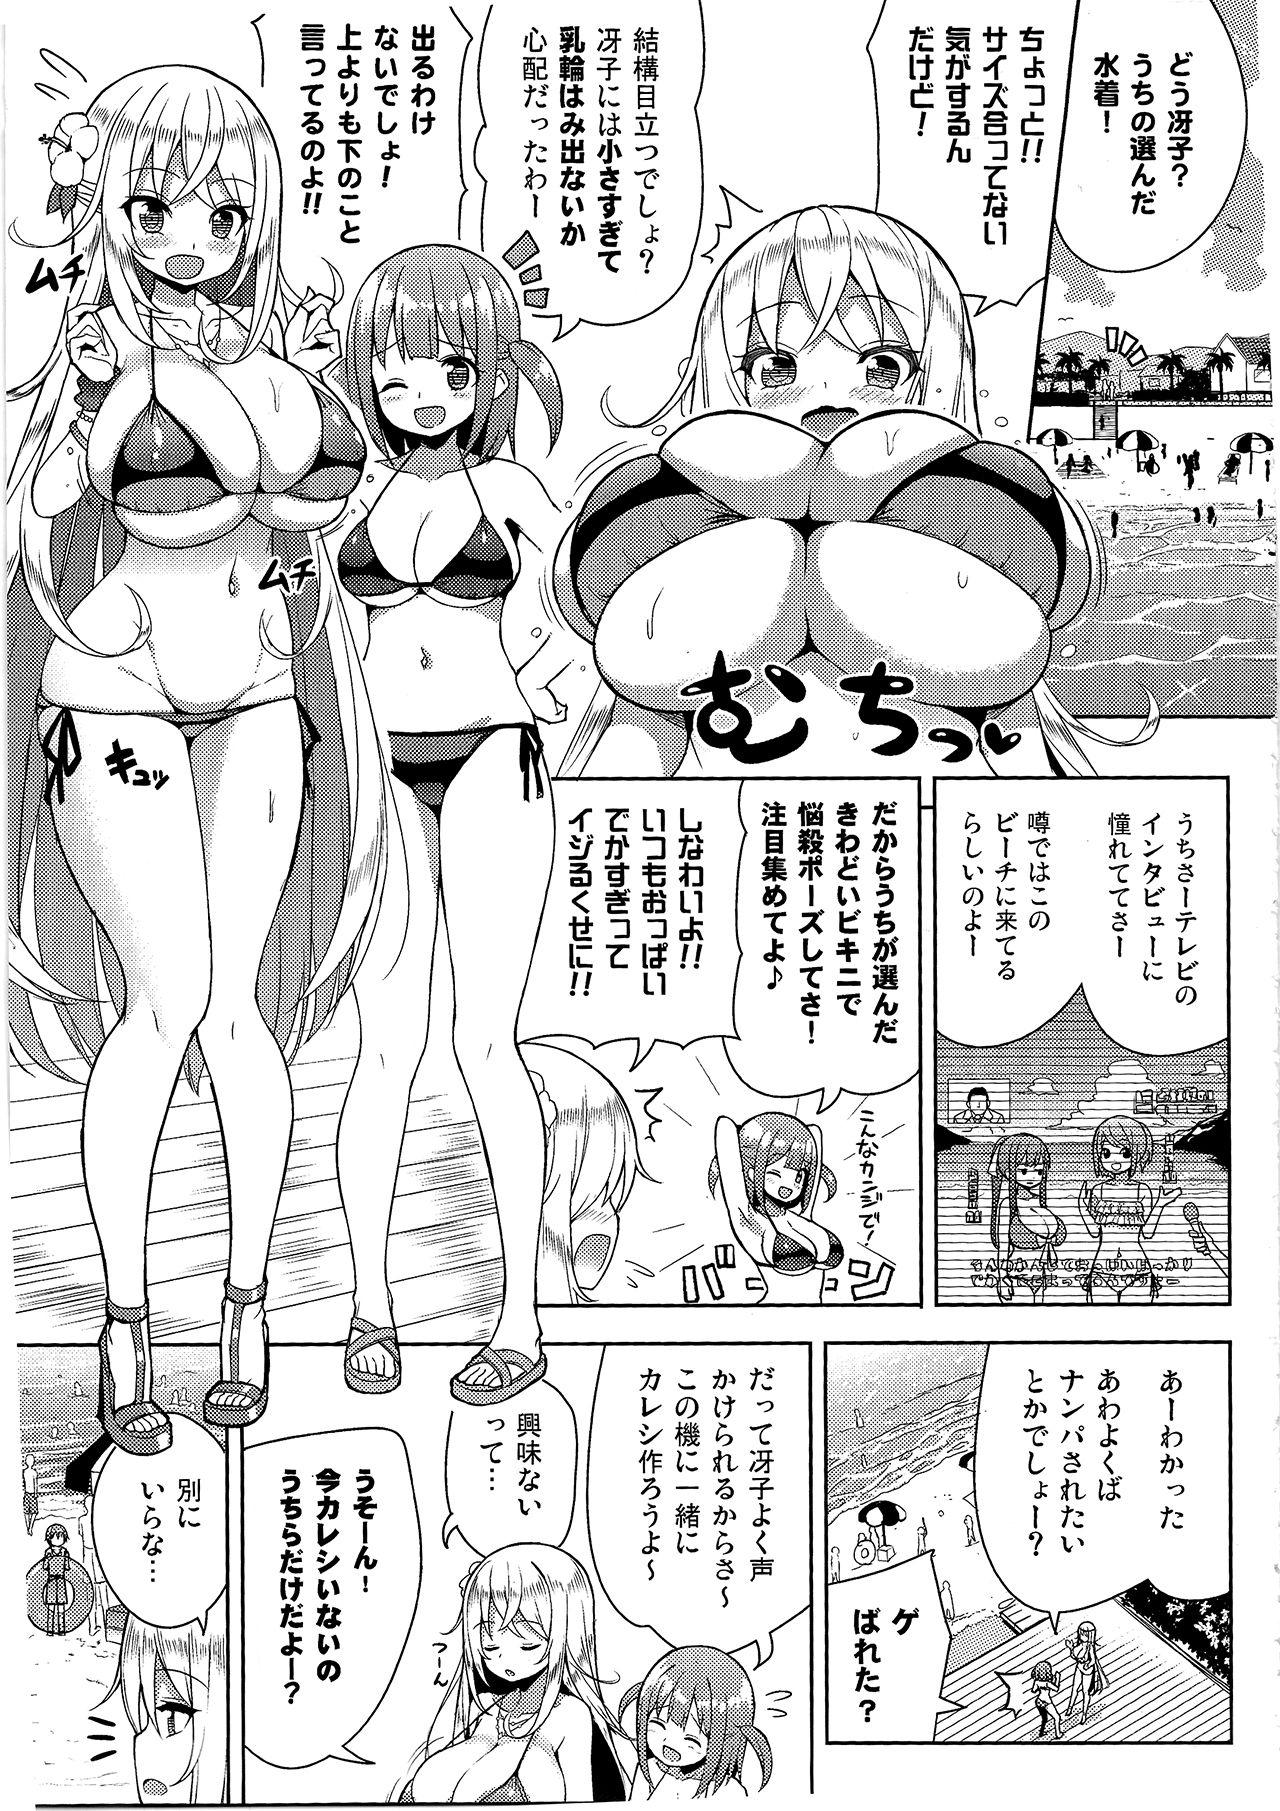 Ikenai Bikini no Onee-san 2 3